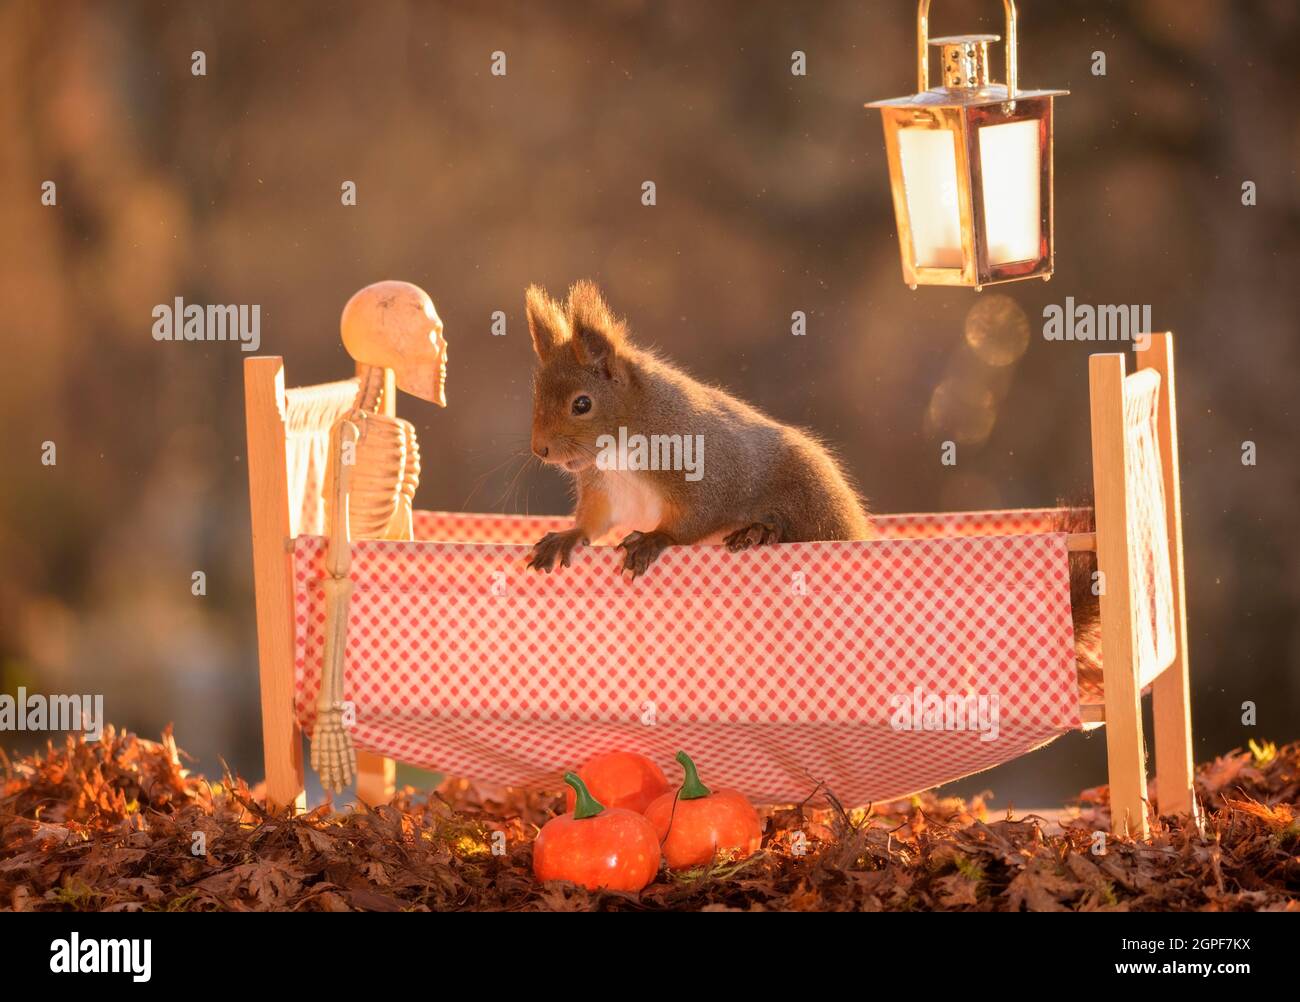 Eichhörnchen mit einem Skelett in einem Bett Stockfoto